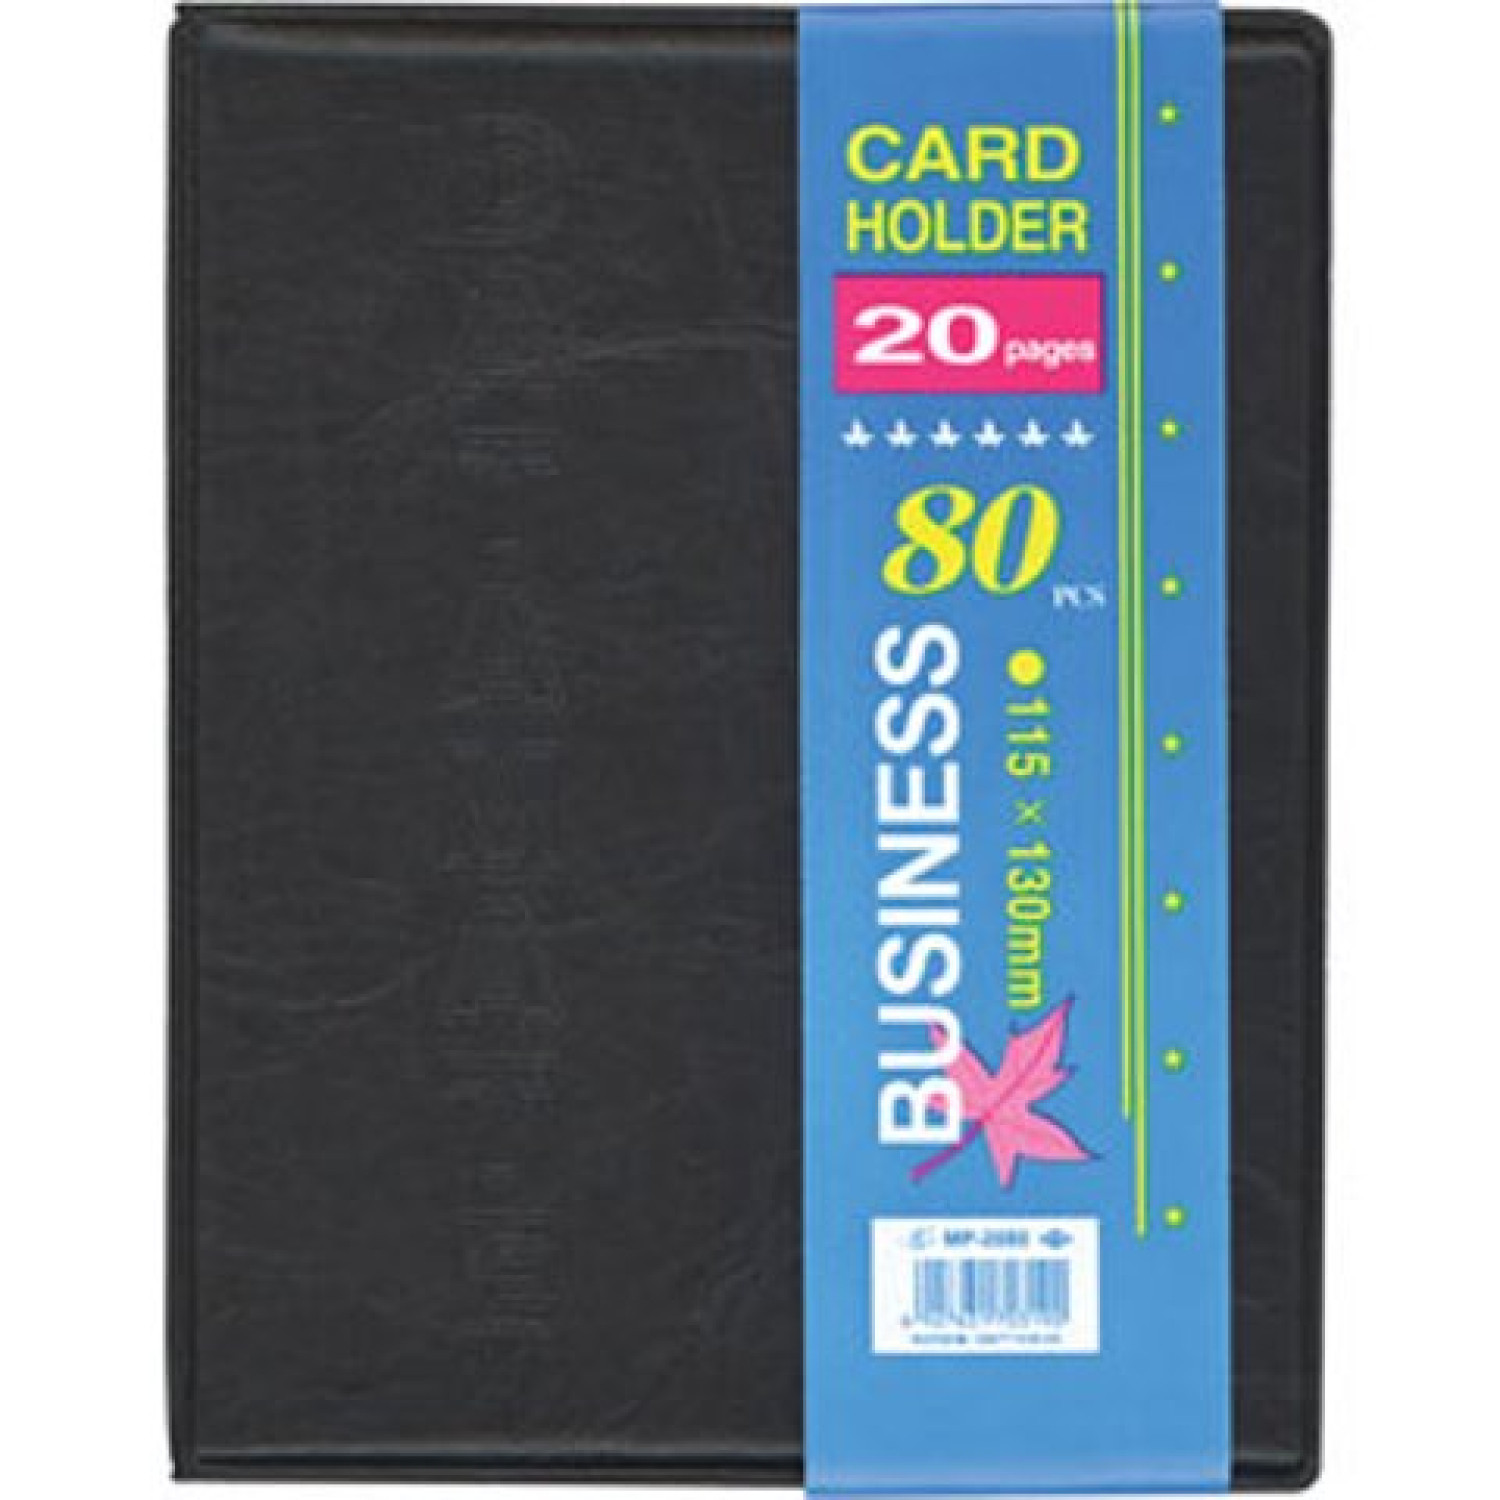 Визитник, двоен, бизнес, 80 визитки